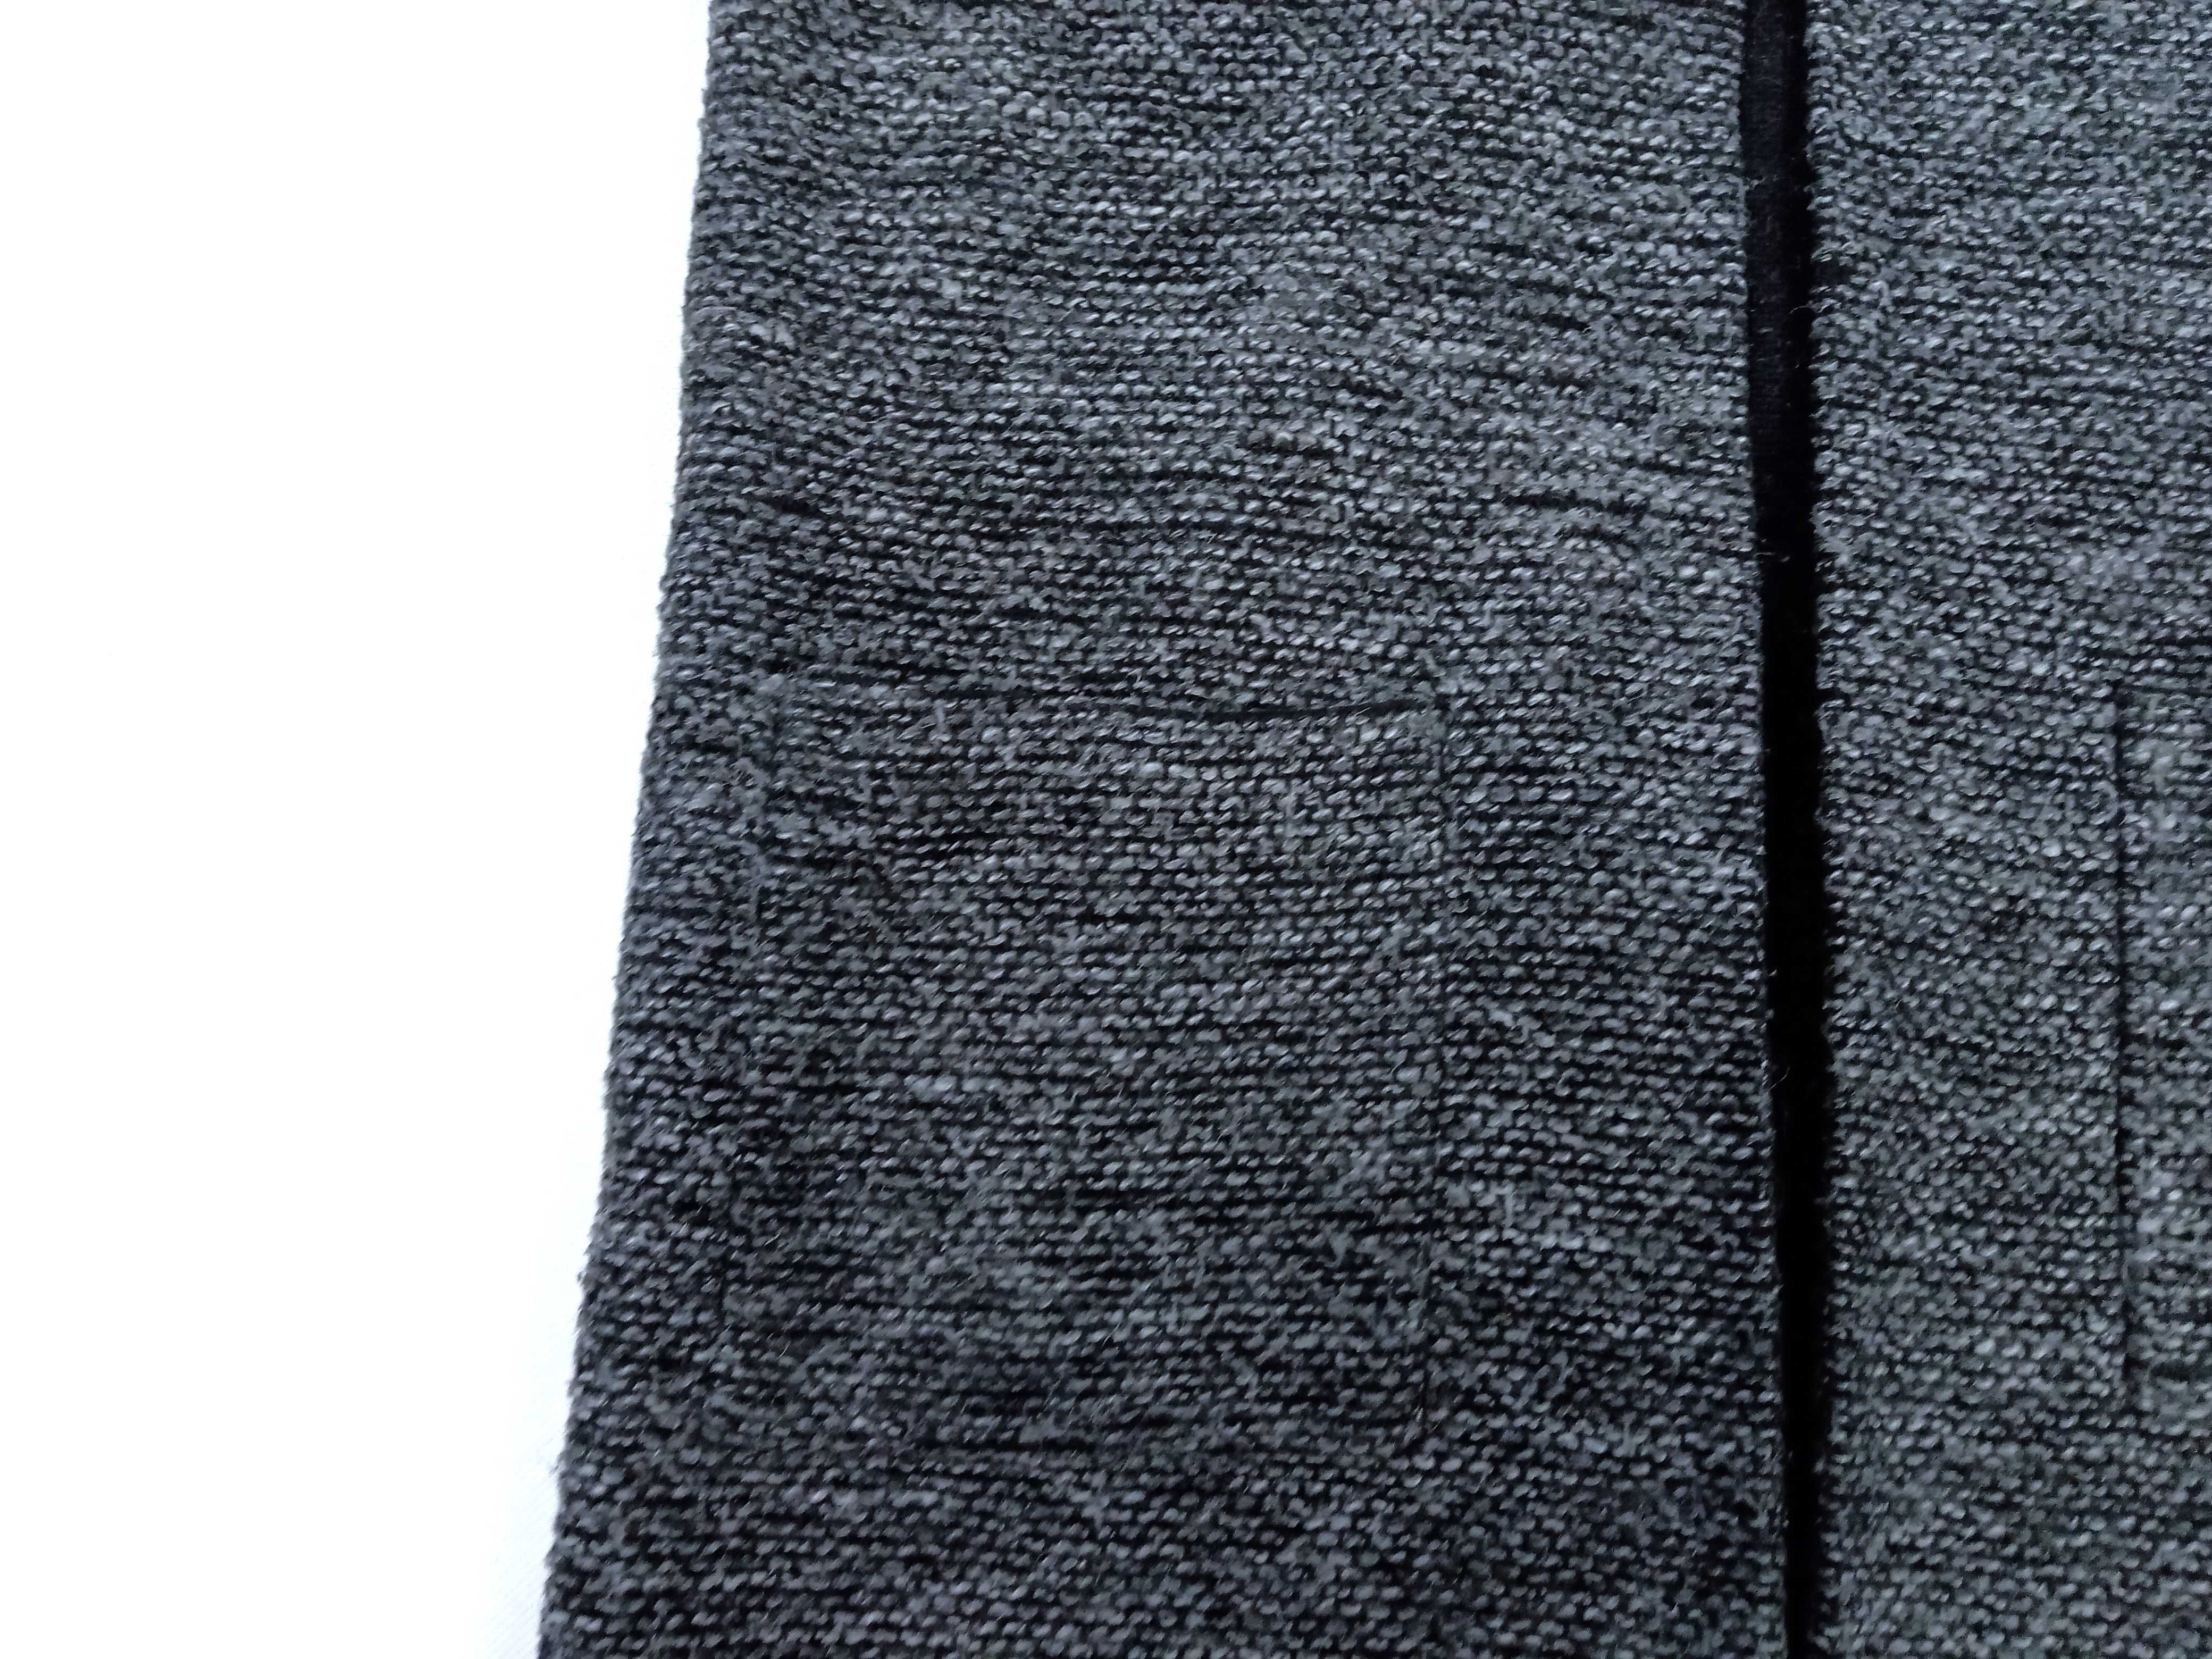 Szary długi sweter damski kardigan Bik bok rozmiar S/M